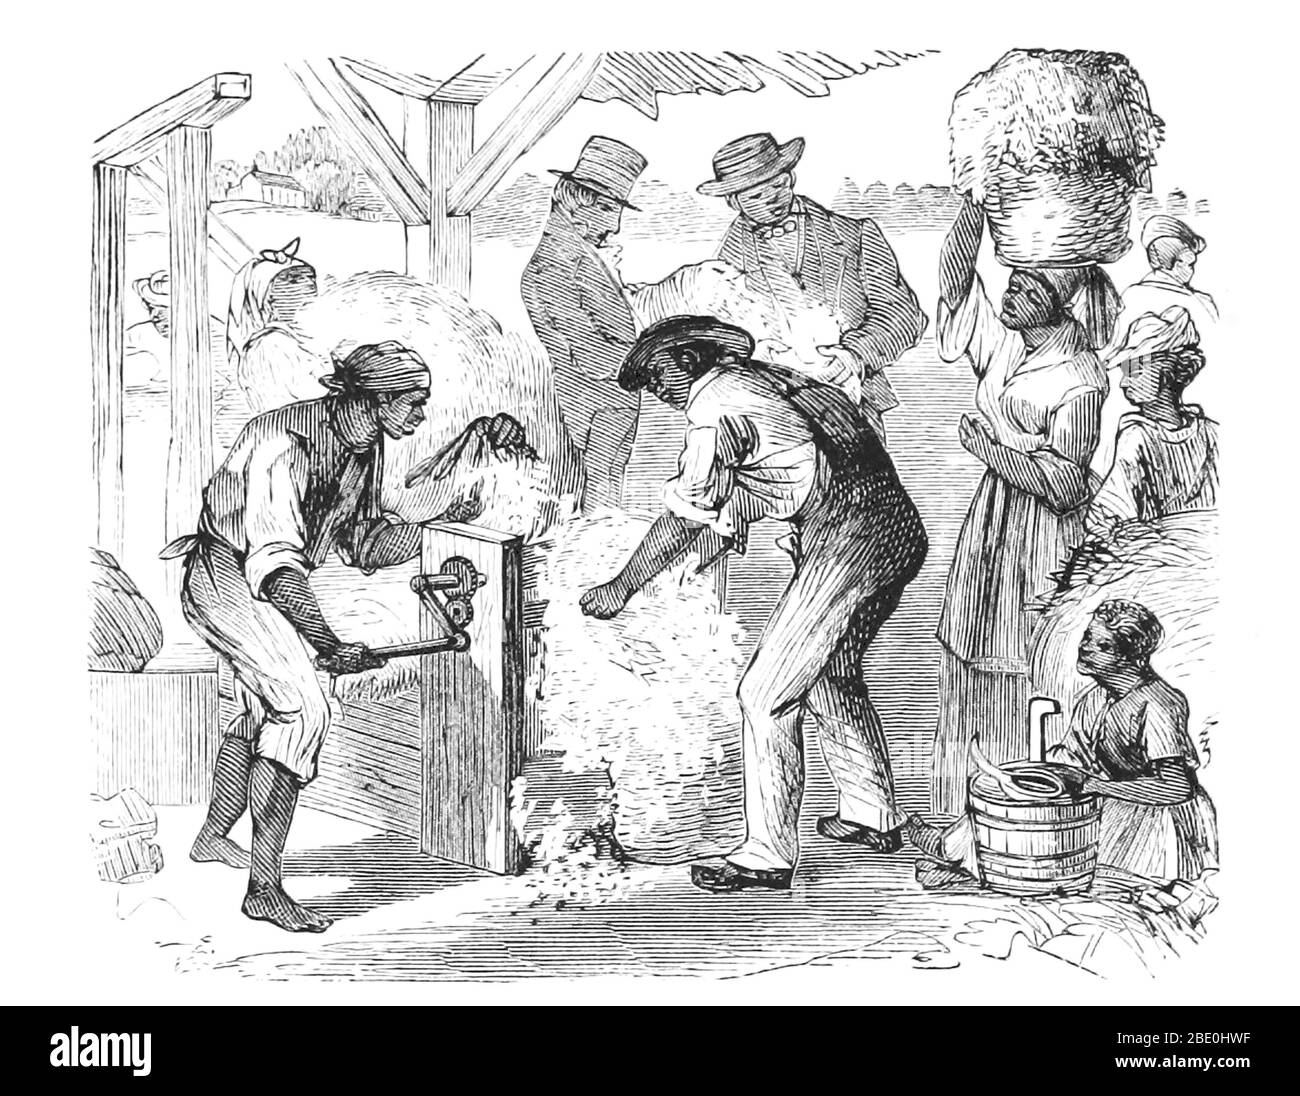 Ein Baumwollgin ist eine Maschine, die Baumwollfasern schnell und einfach von ihren Samen trennt und somit eine viel höhere Produktivität als die manuelle Baumwolltrennung ermöglicht. Die Fasern werden zu Kleidung oder anderen Baumwollprodukten verarbeitet, und jede unbeschädigte Baumwolle wurde für Kleidung verwendet. Samen können verwendet werden, um mehr Baumwolle anzubauen oder Baumwollsaatöl und -Mehl zu produzieren. Der erste moderne mechanische Baumwollgin wurde 1793 von Eli Whitney kreiert und 1794 patentiert. Es verwendete eine Kombination aus einem Drahtsieb und kleinen Drahthaken, um die Baumwolle durchzuziehen, während Bürsten kontinuierlich die losen Baumwollflusen entfernten, um zu verhindern Stockfoto